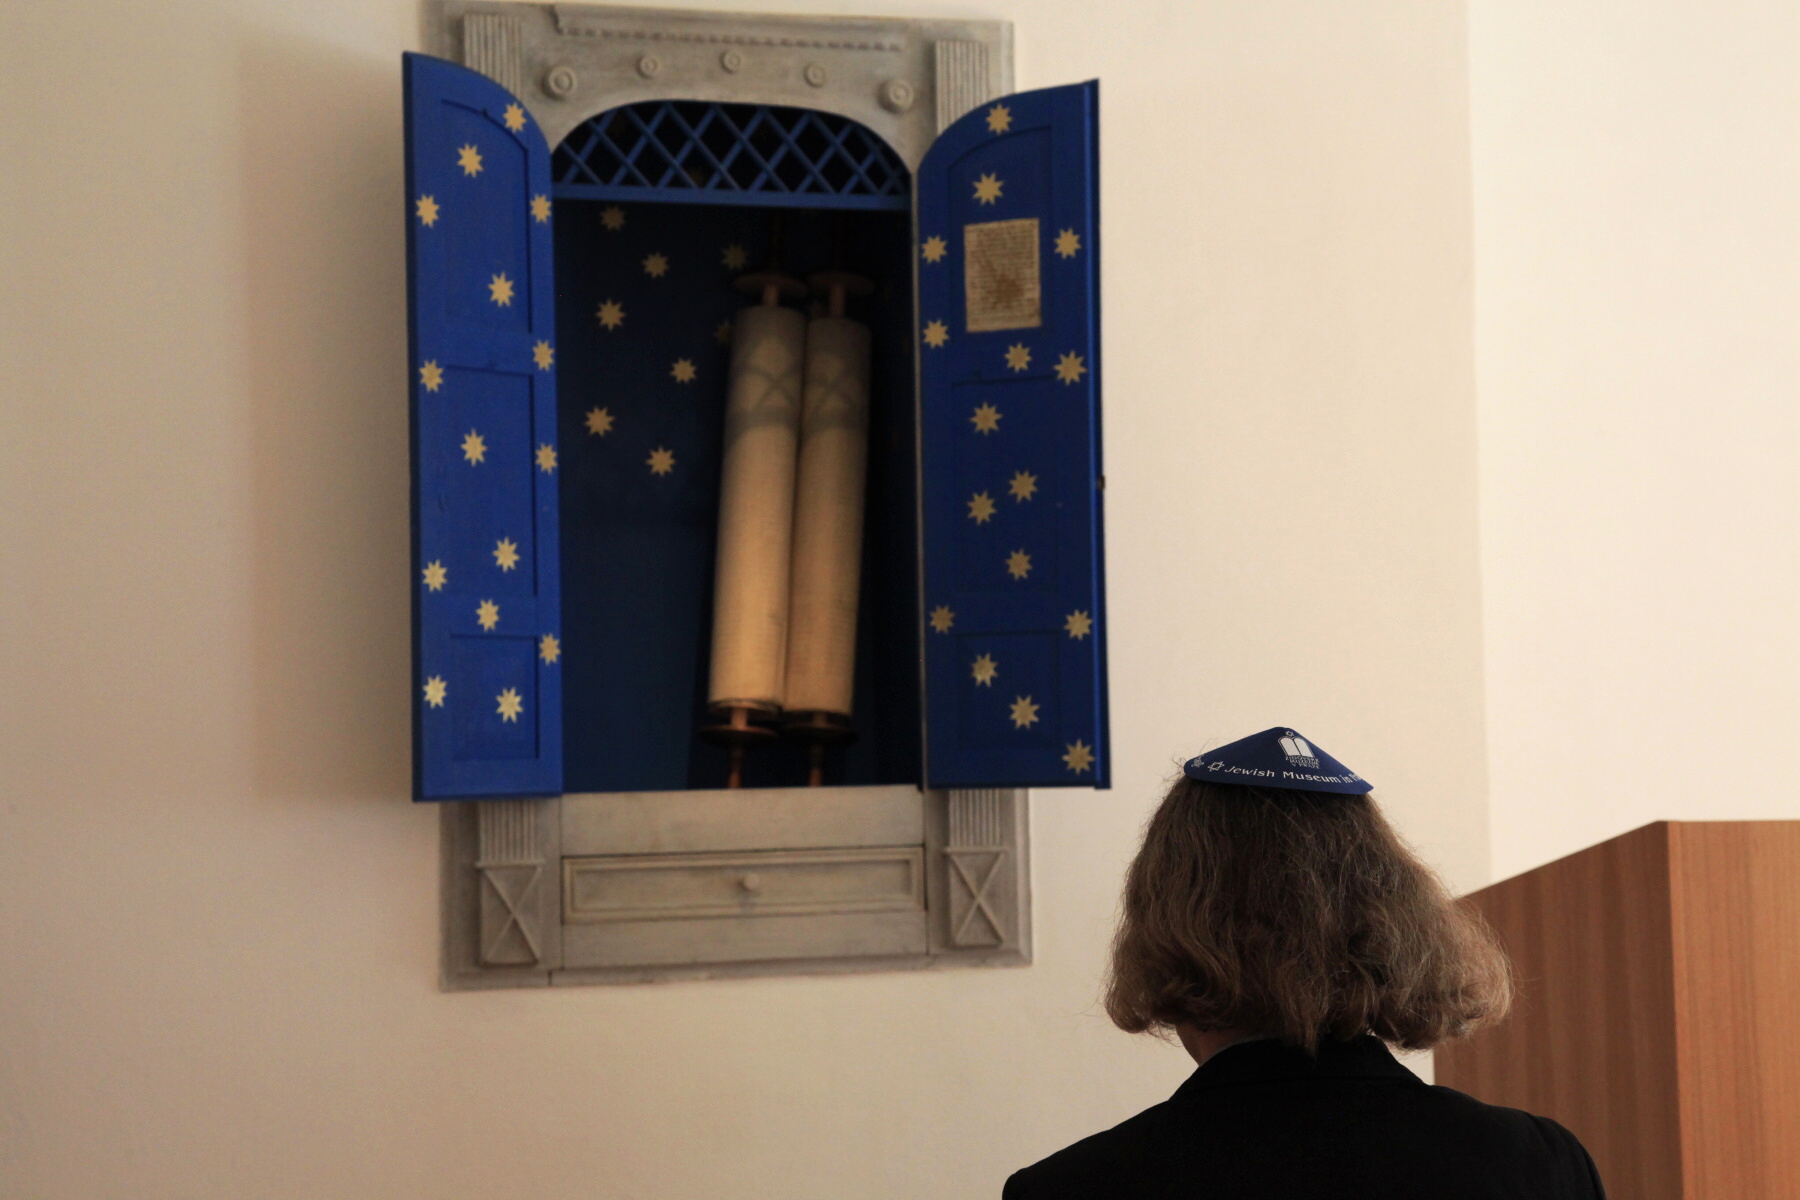 otevreni synagoga ckyne 30.3.20104 9